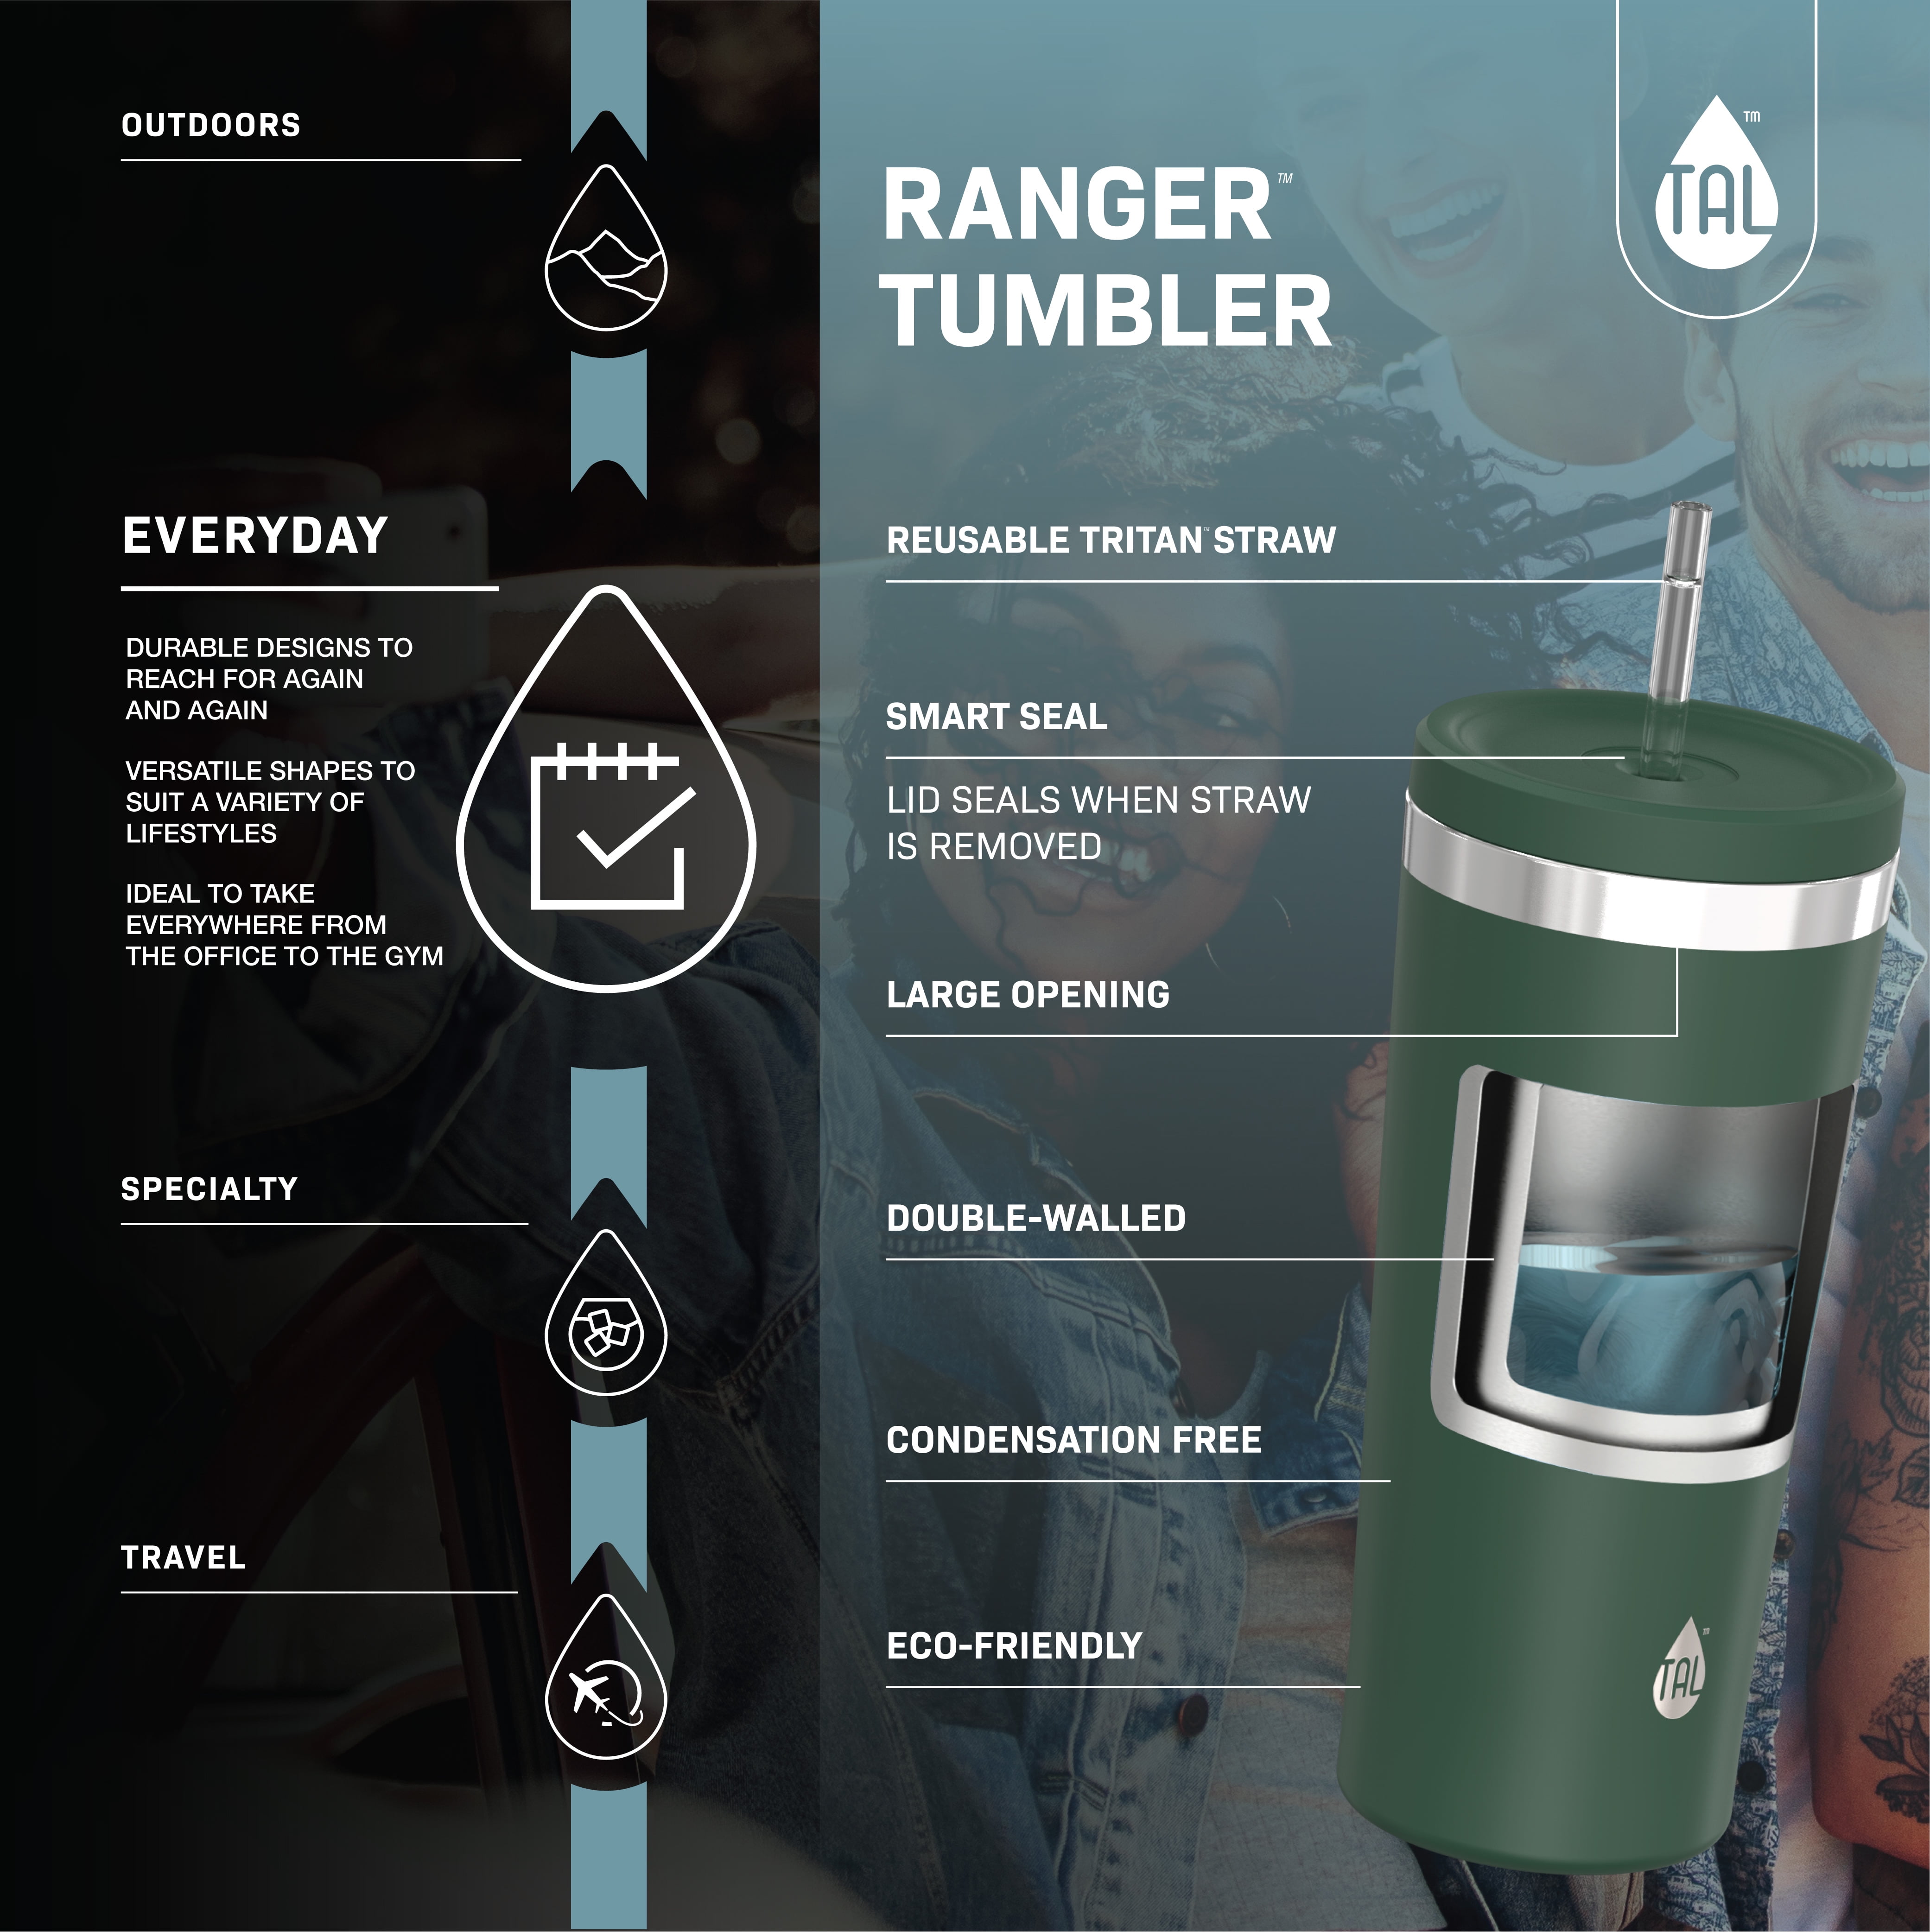 TAL Stainless Steel Ranger Tumbler Water Bottle 24 fl oz, Green Sage 